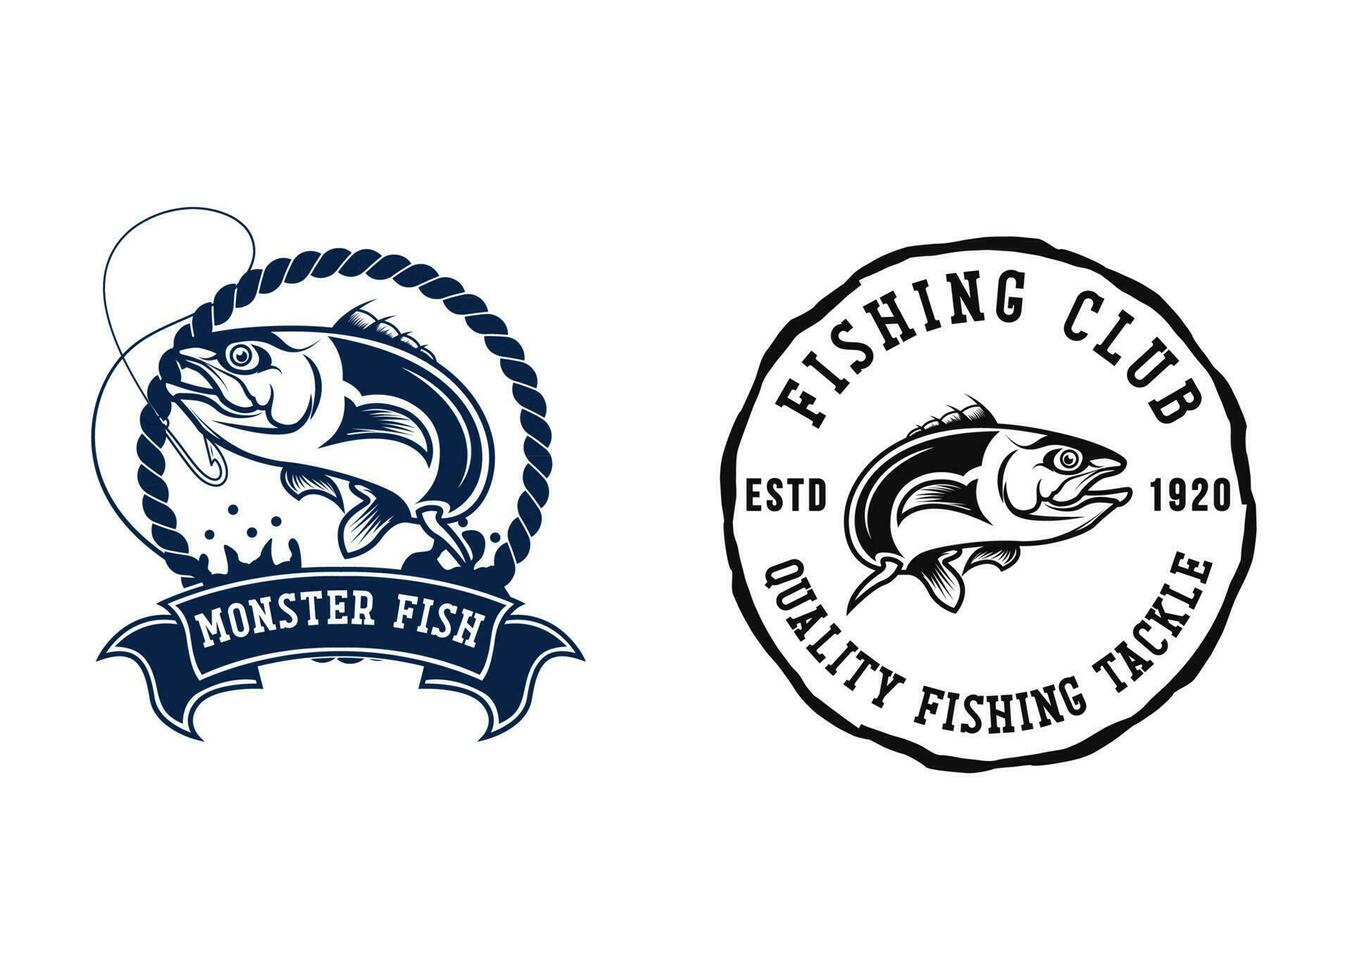 diseño del logo del emblema del club de pesca. vector